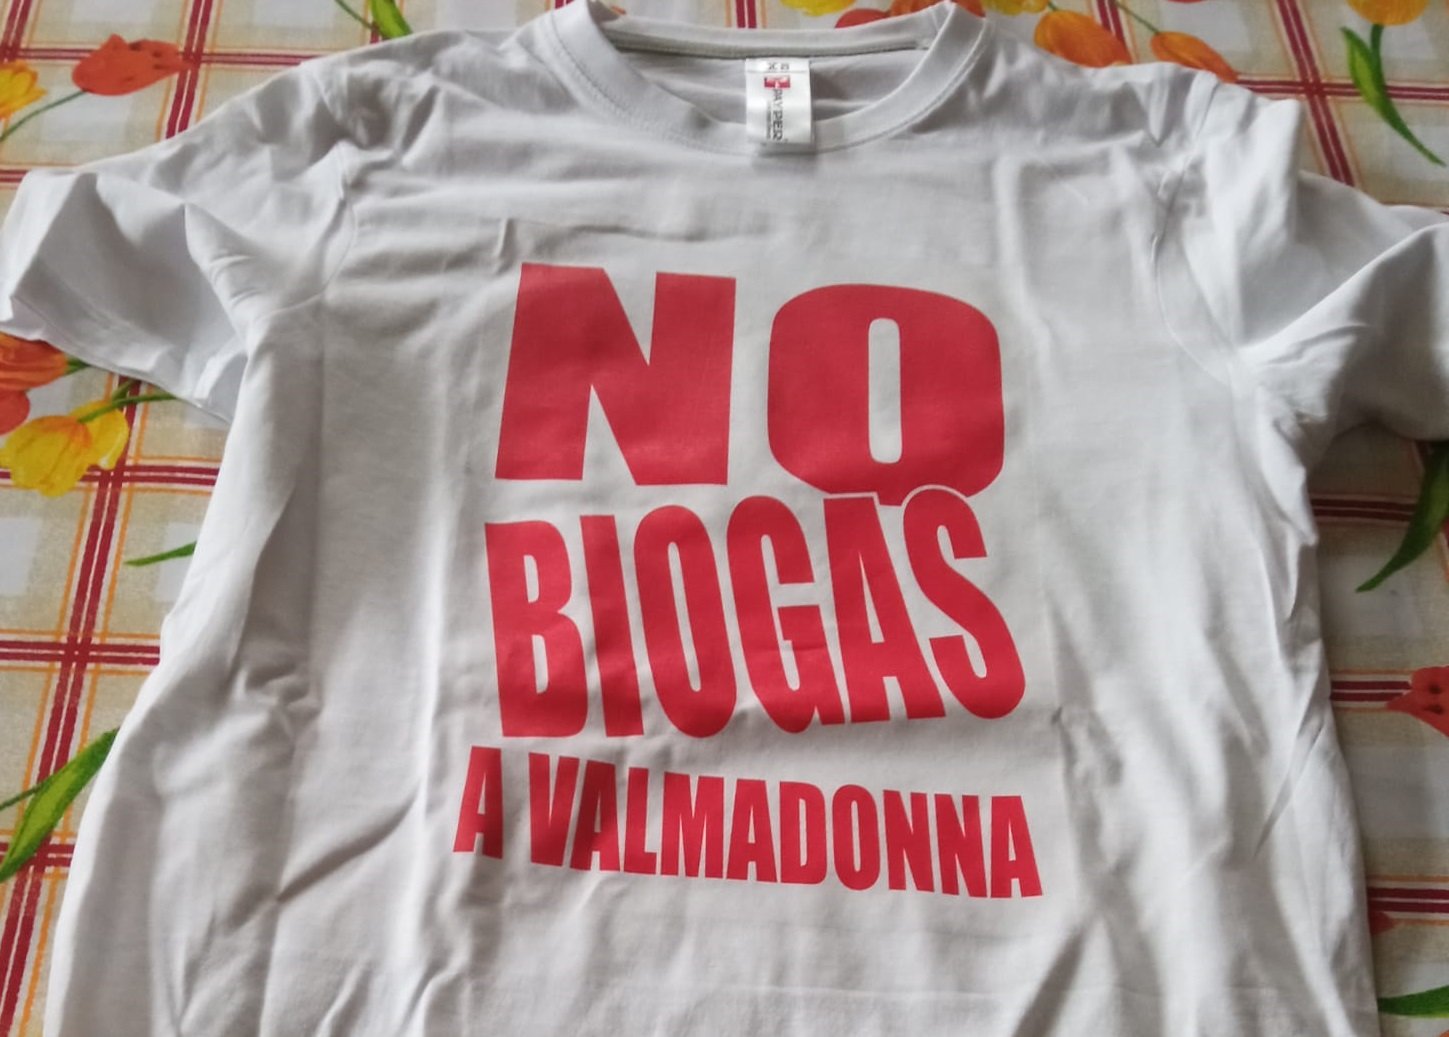 “No biogas a Valmadonna”: lunedì il presidio sotto il Comune di Alessandria